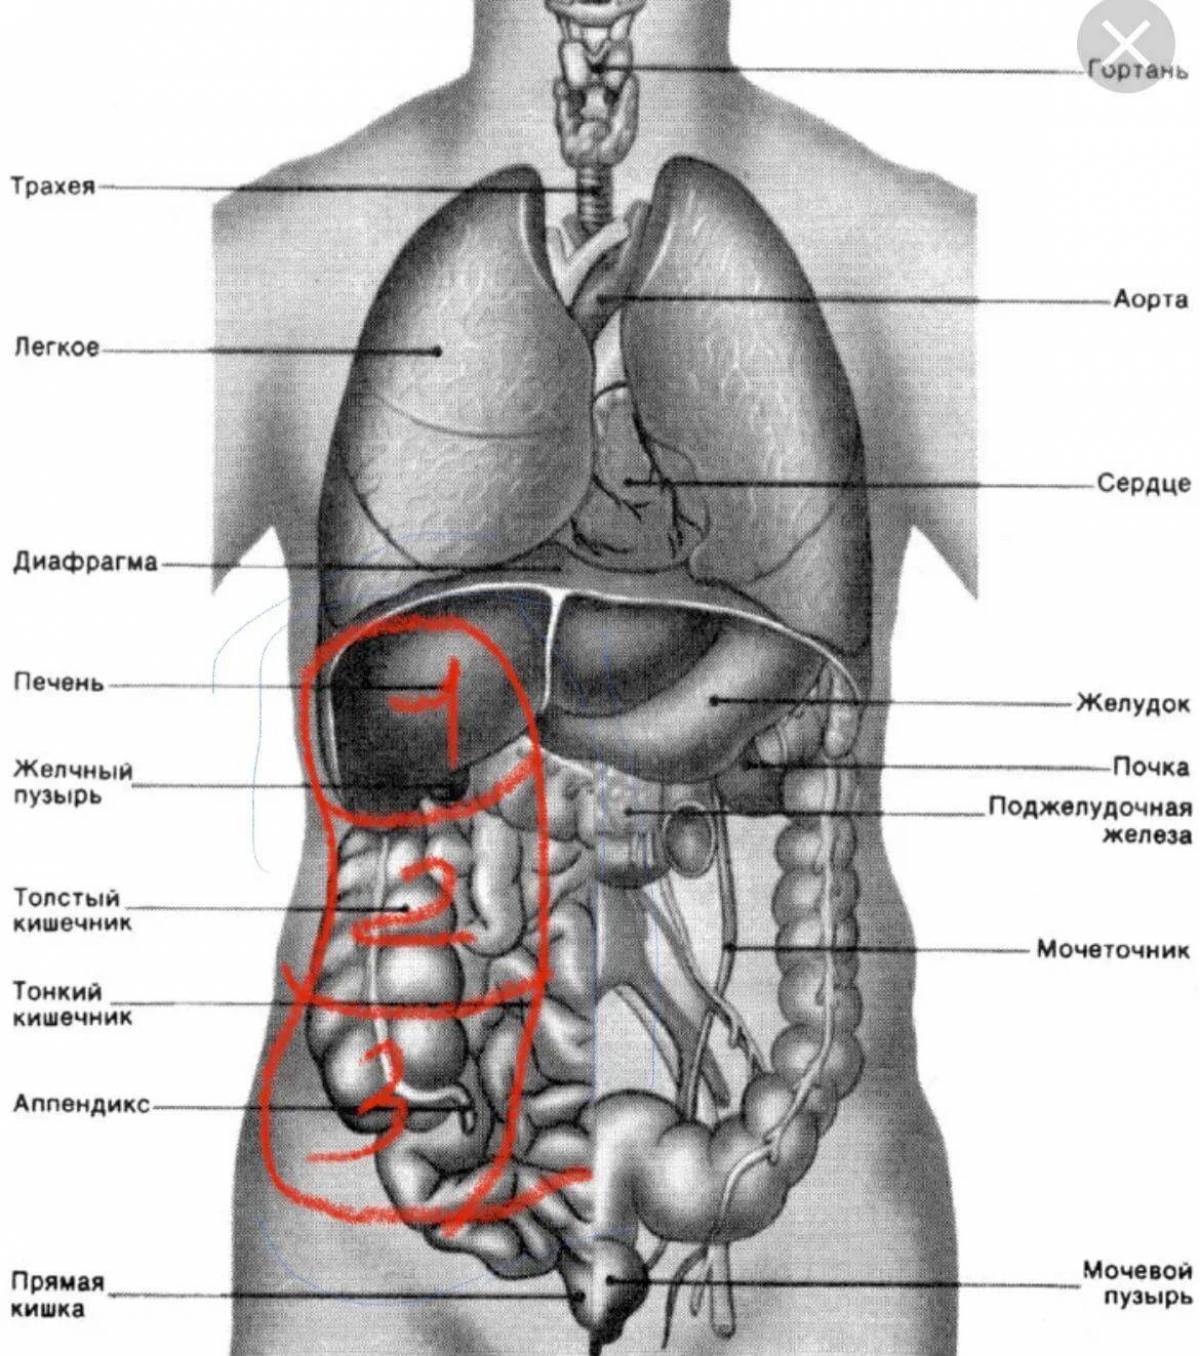 Справа под легким. Внутренние органы человека схема расположения. Расположение органов у человека сбоку. Строение внутренних органов человека слева спереди. Внутренности человека анатомия расположение.